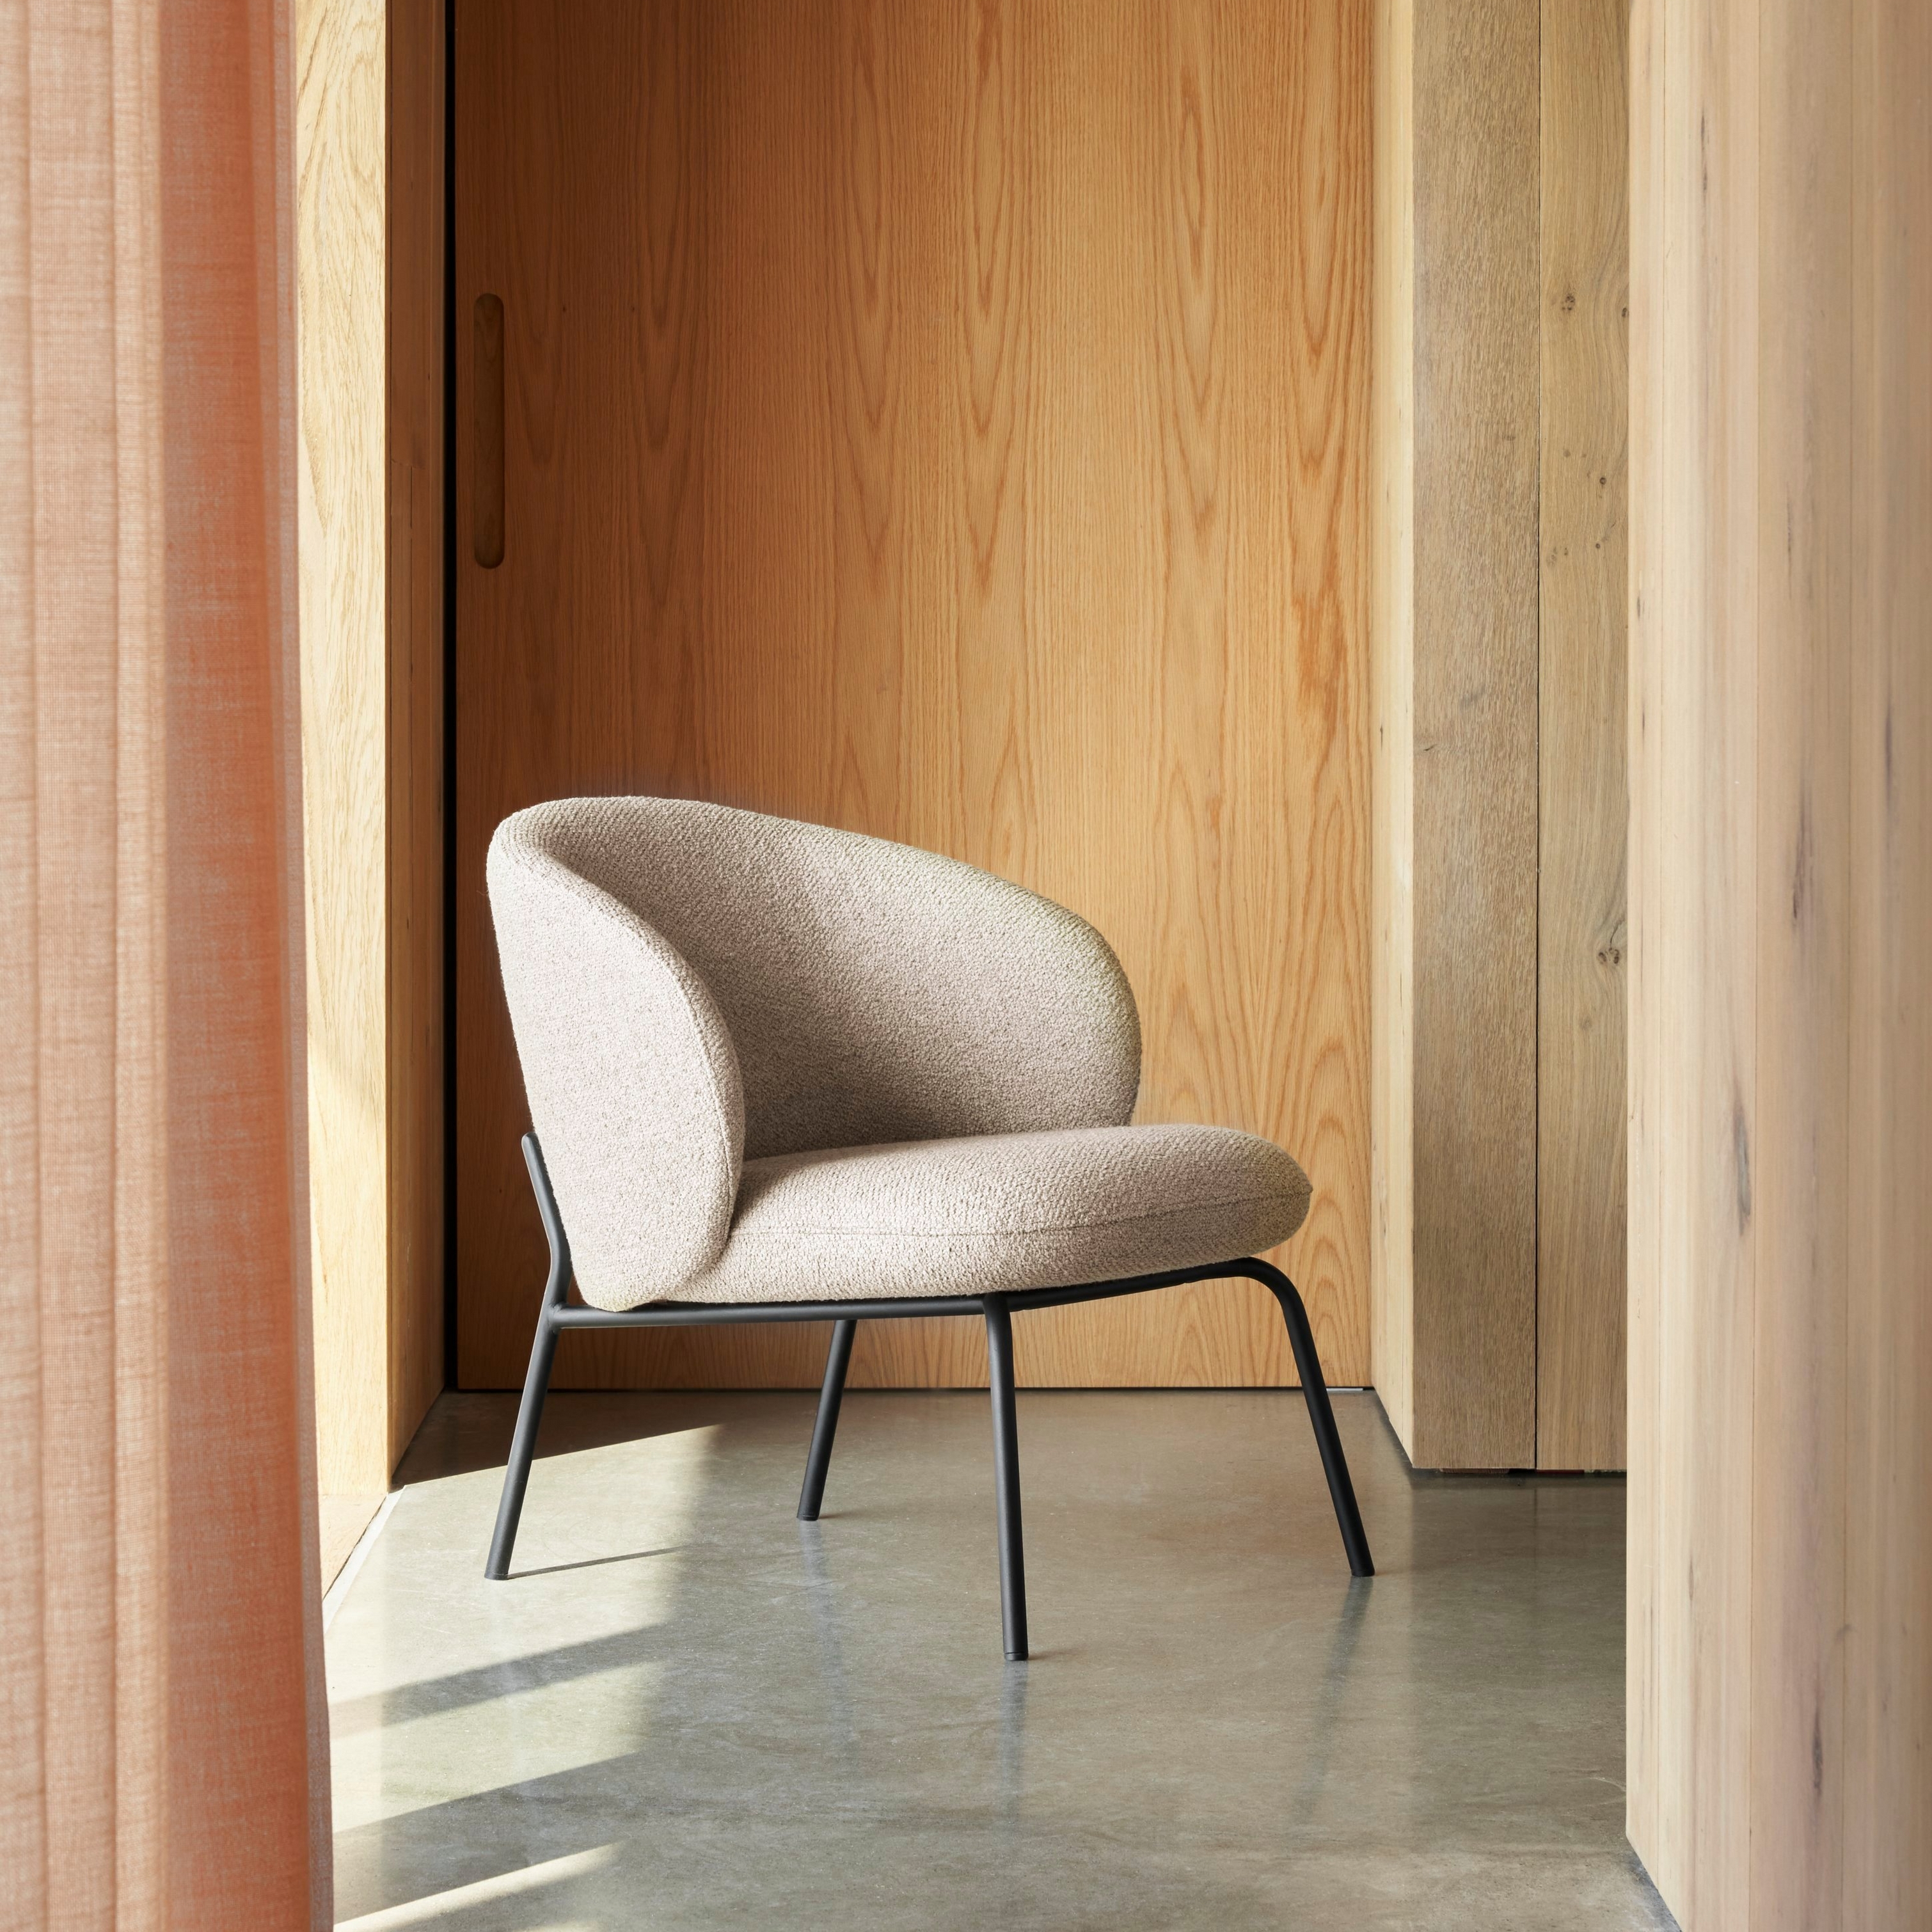 现代风格椅款，带米色软垫和黑色框架，摆放在阳光普照的木质饰面空间内。